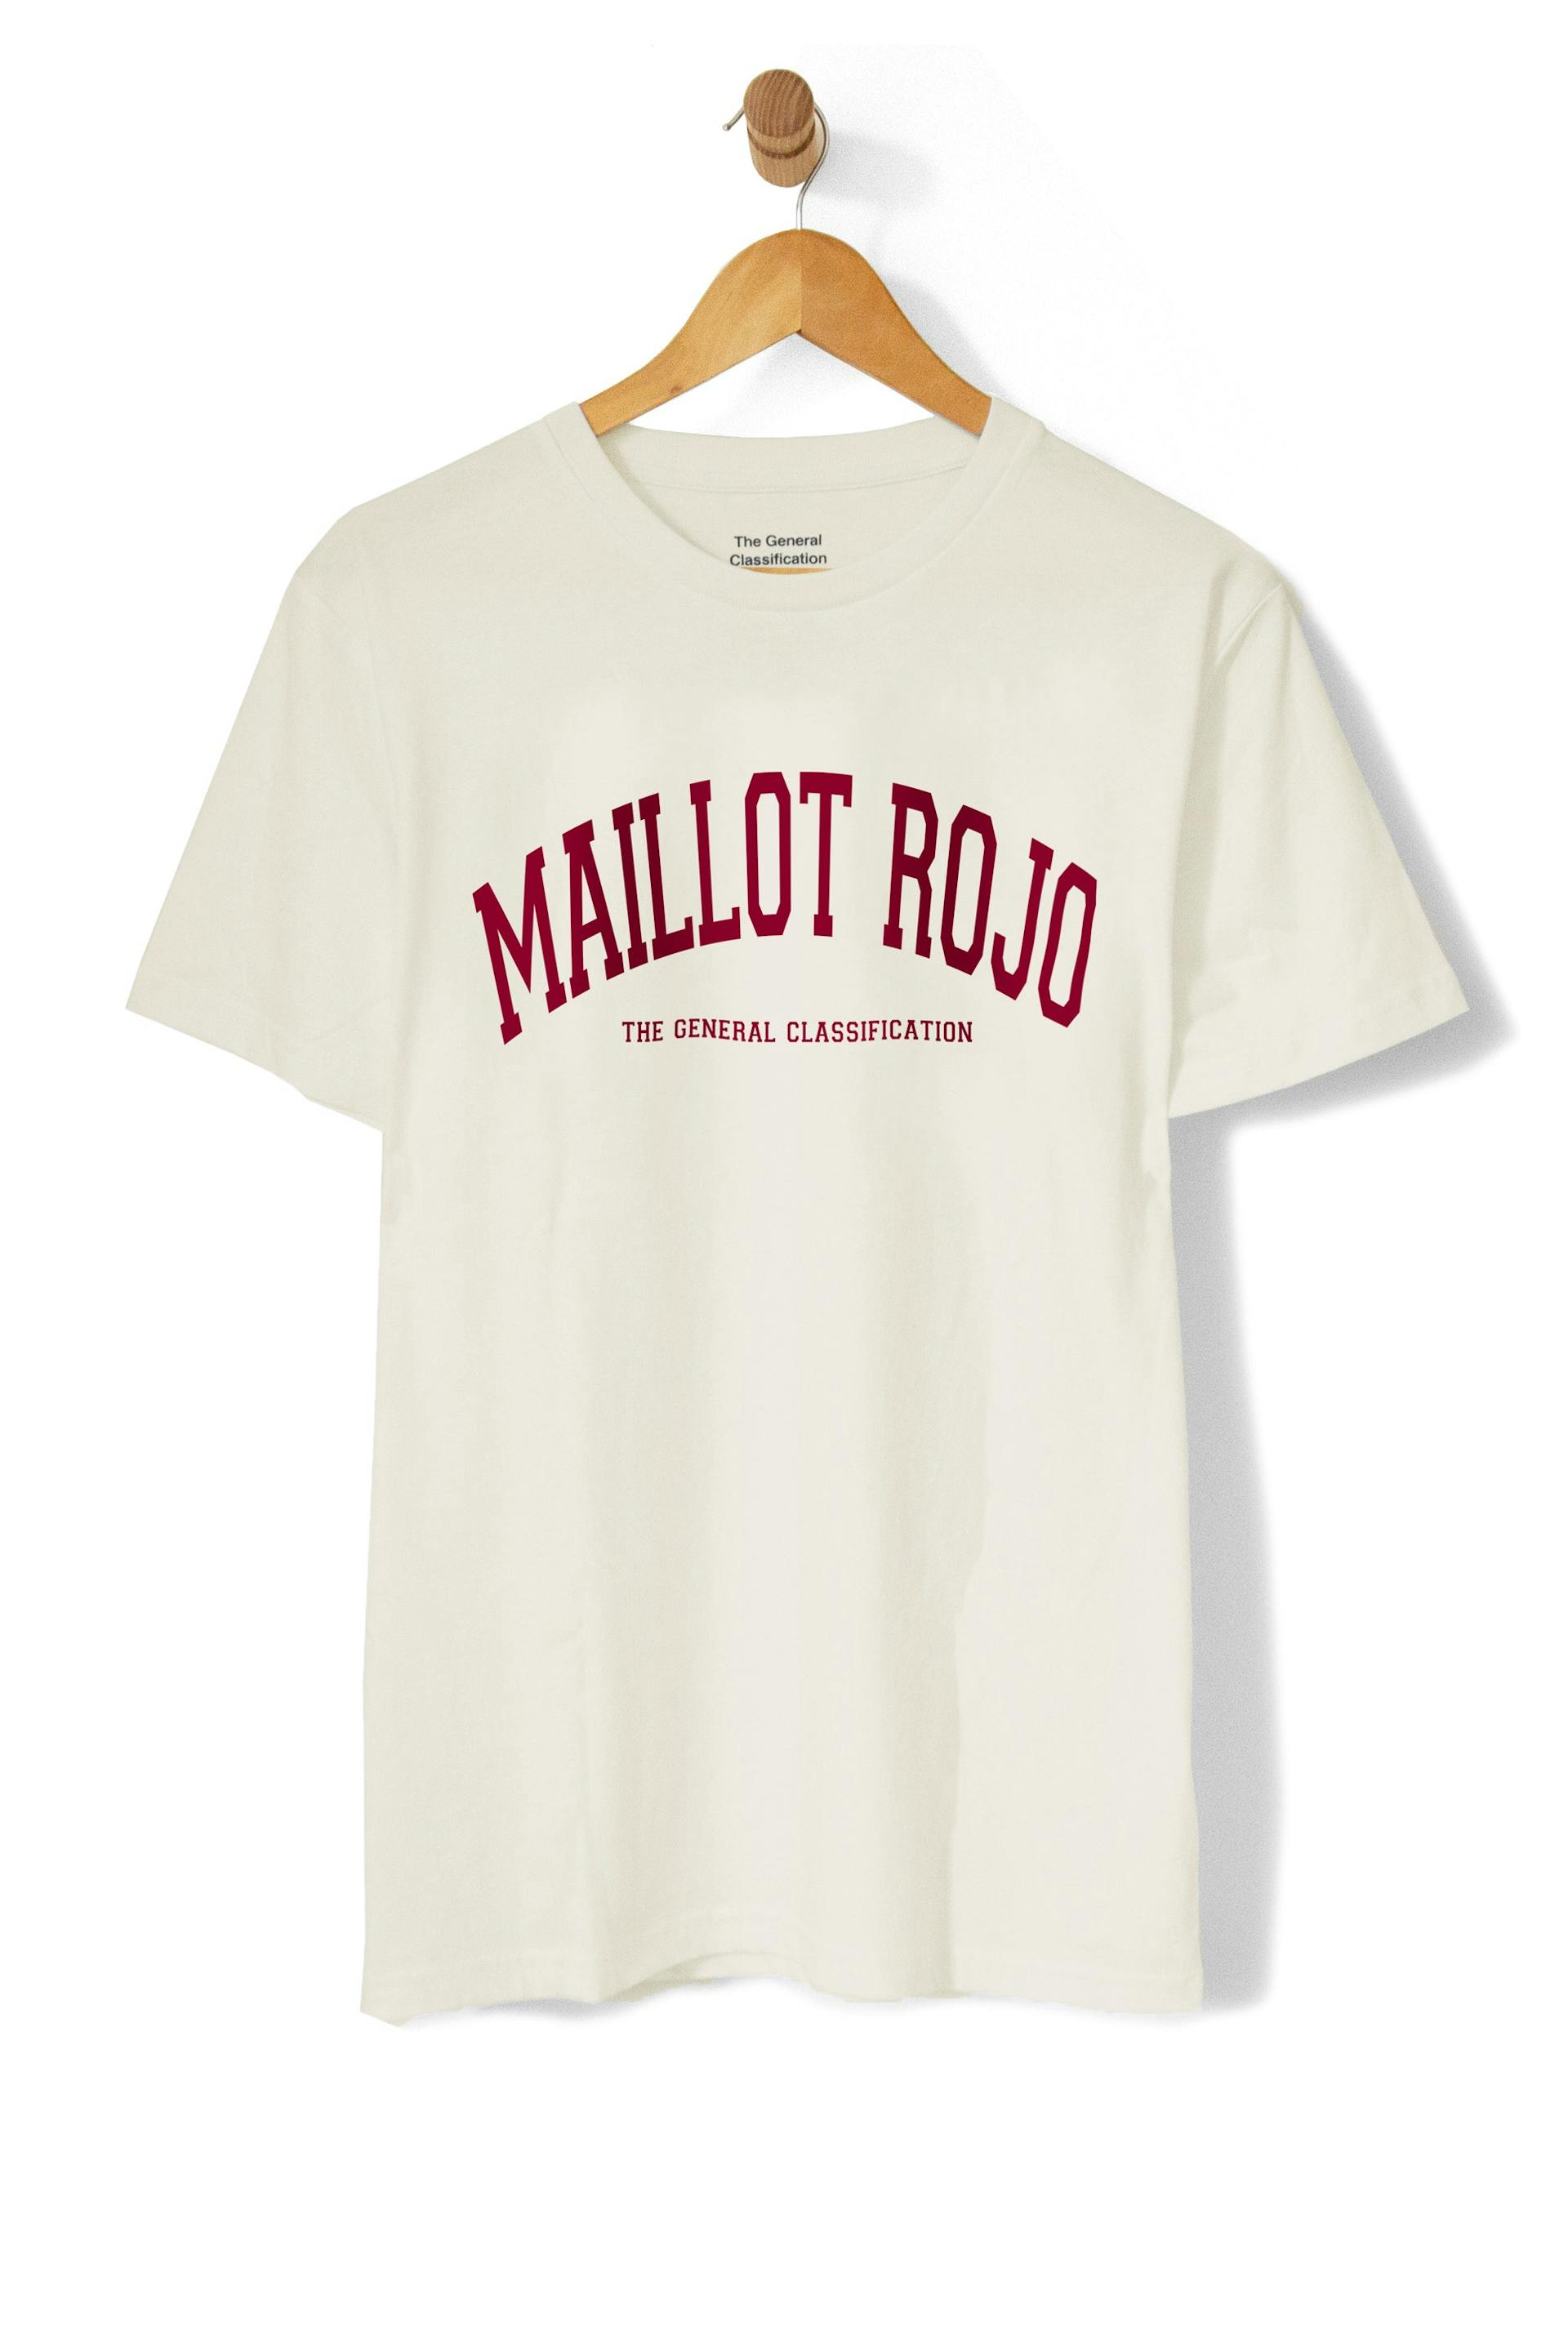 Maillot Rojo Tee Vintage White